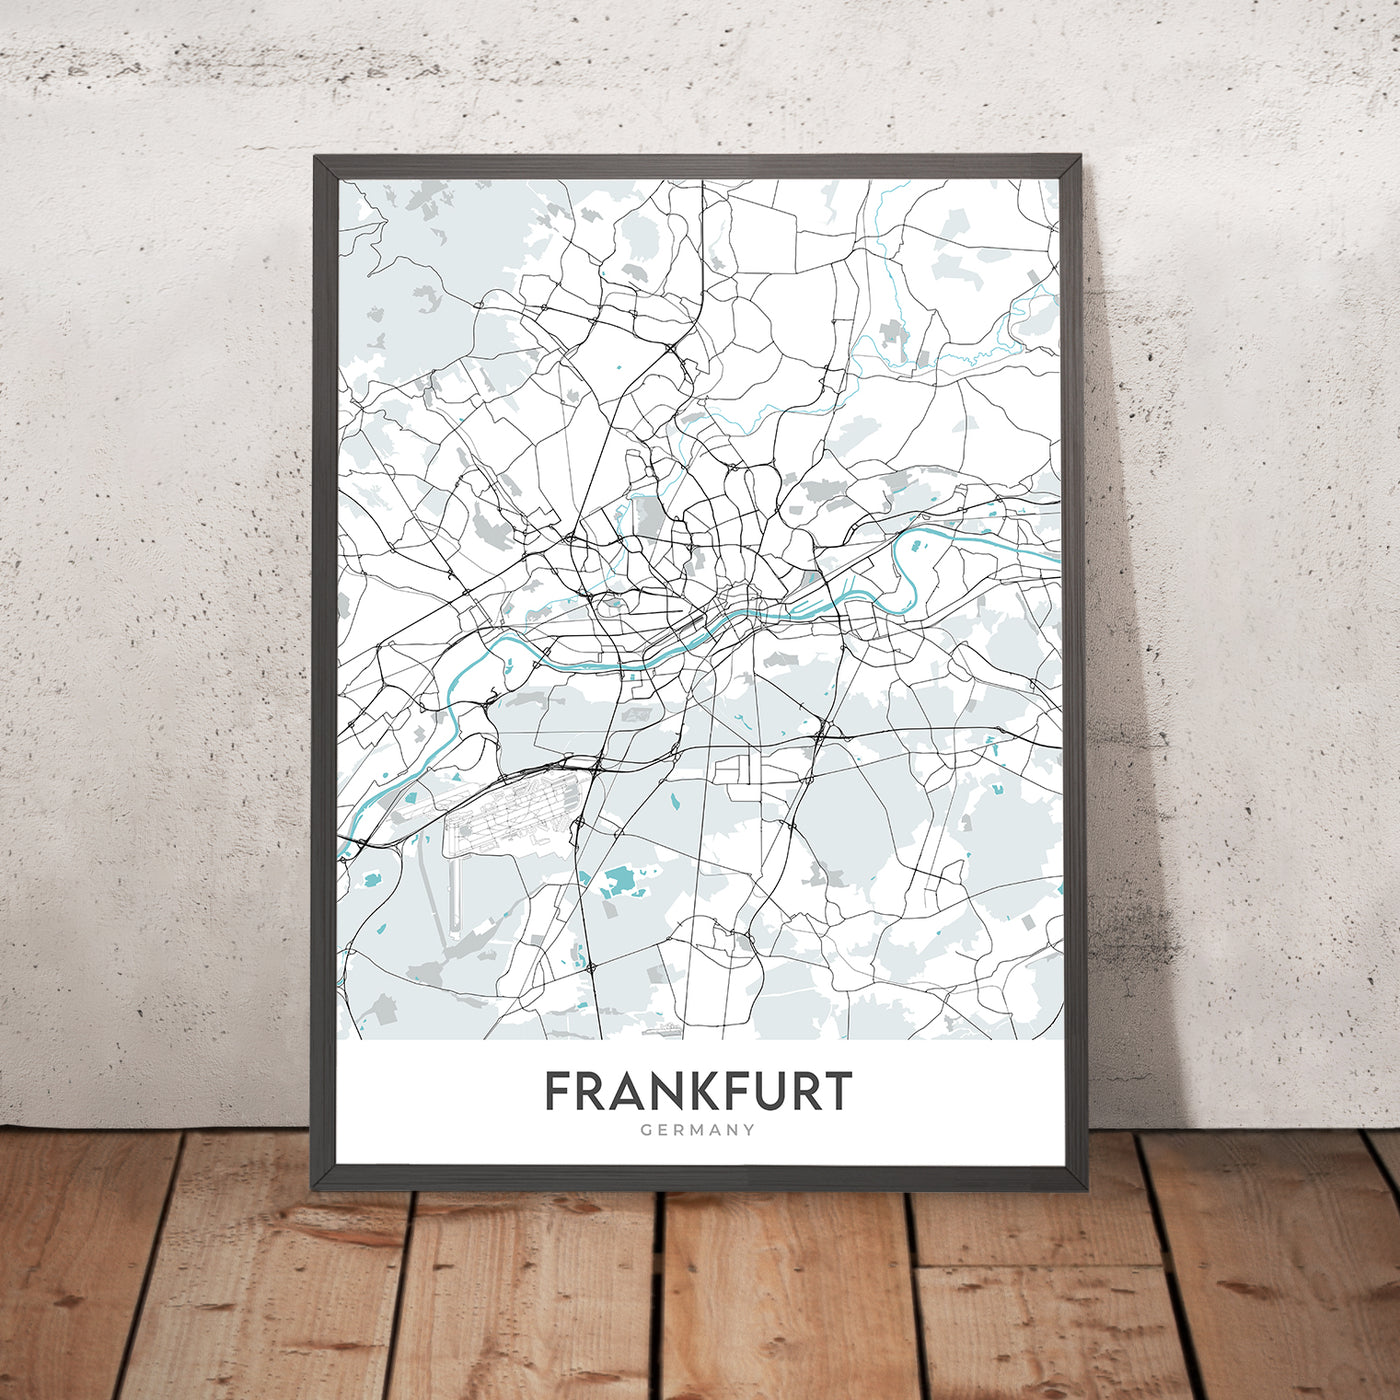 Moderner Stadtplan von Frankfurt, Deutschland: Bahnhofsviertel, Commerzbank Tower, Frankfurter Dom, Main, Sachsenhausen